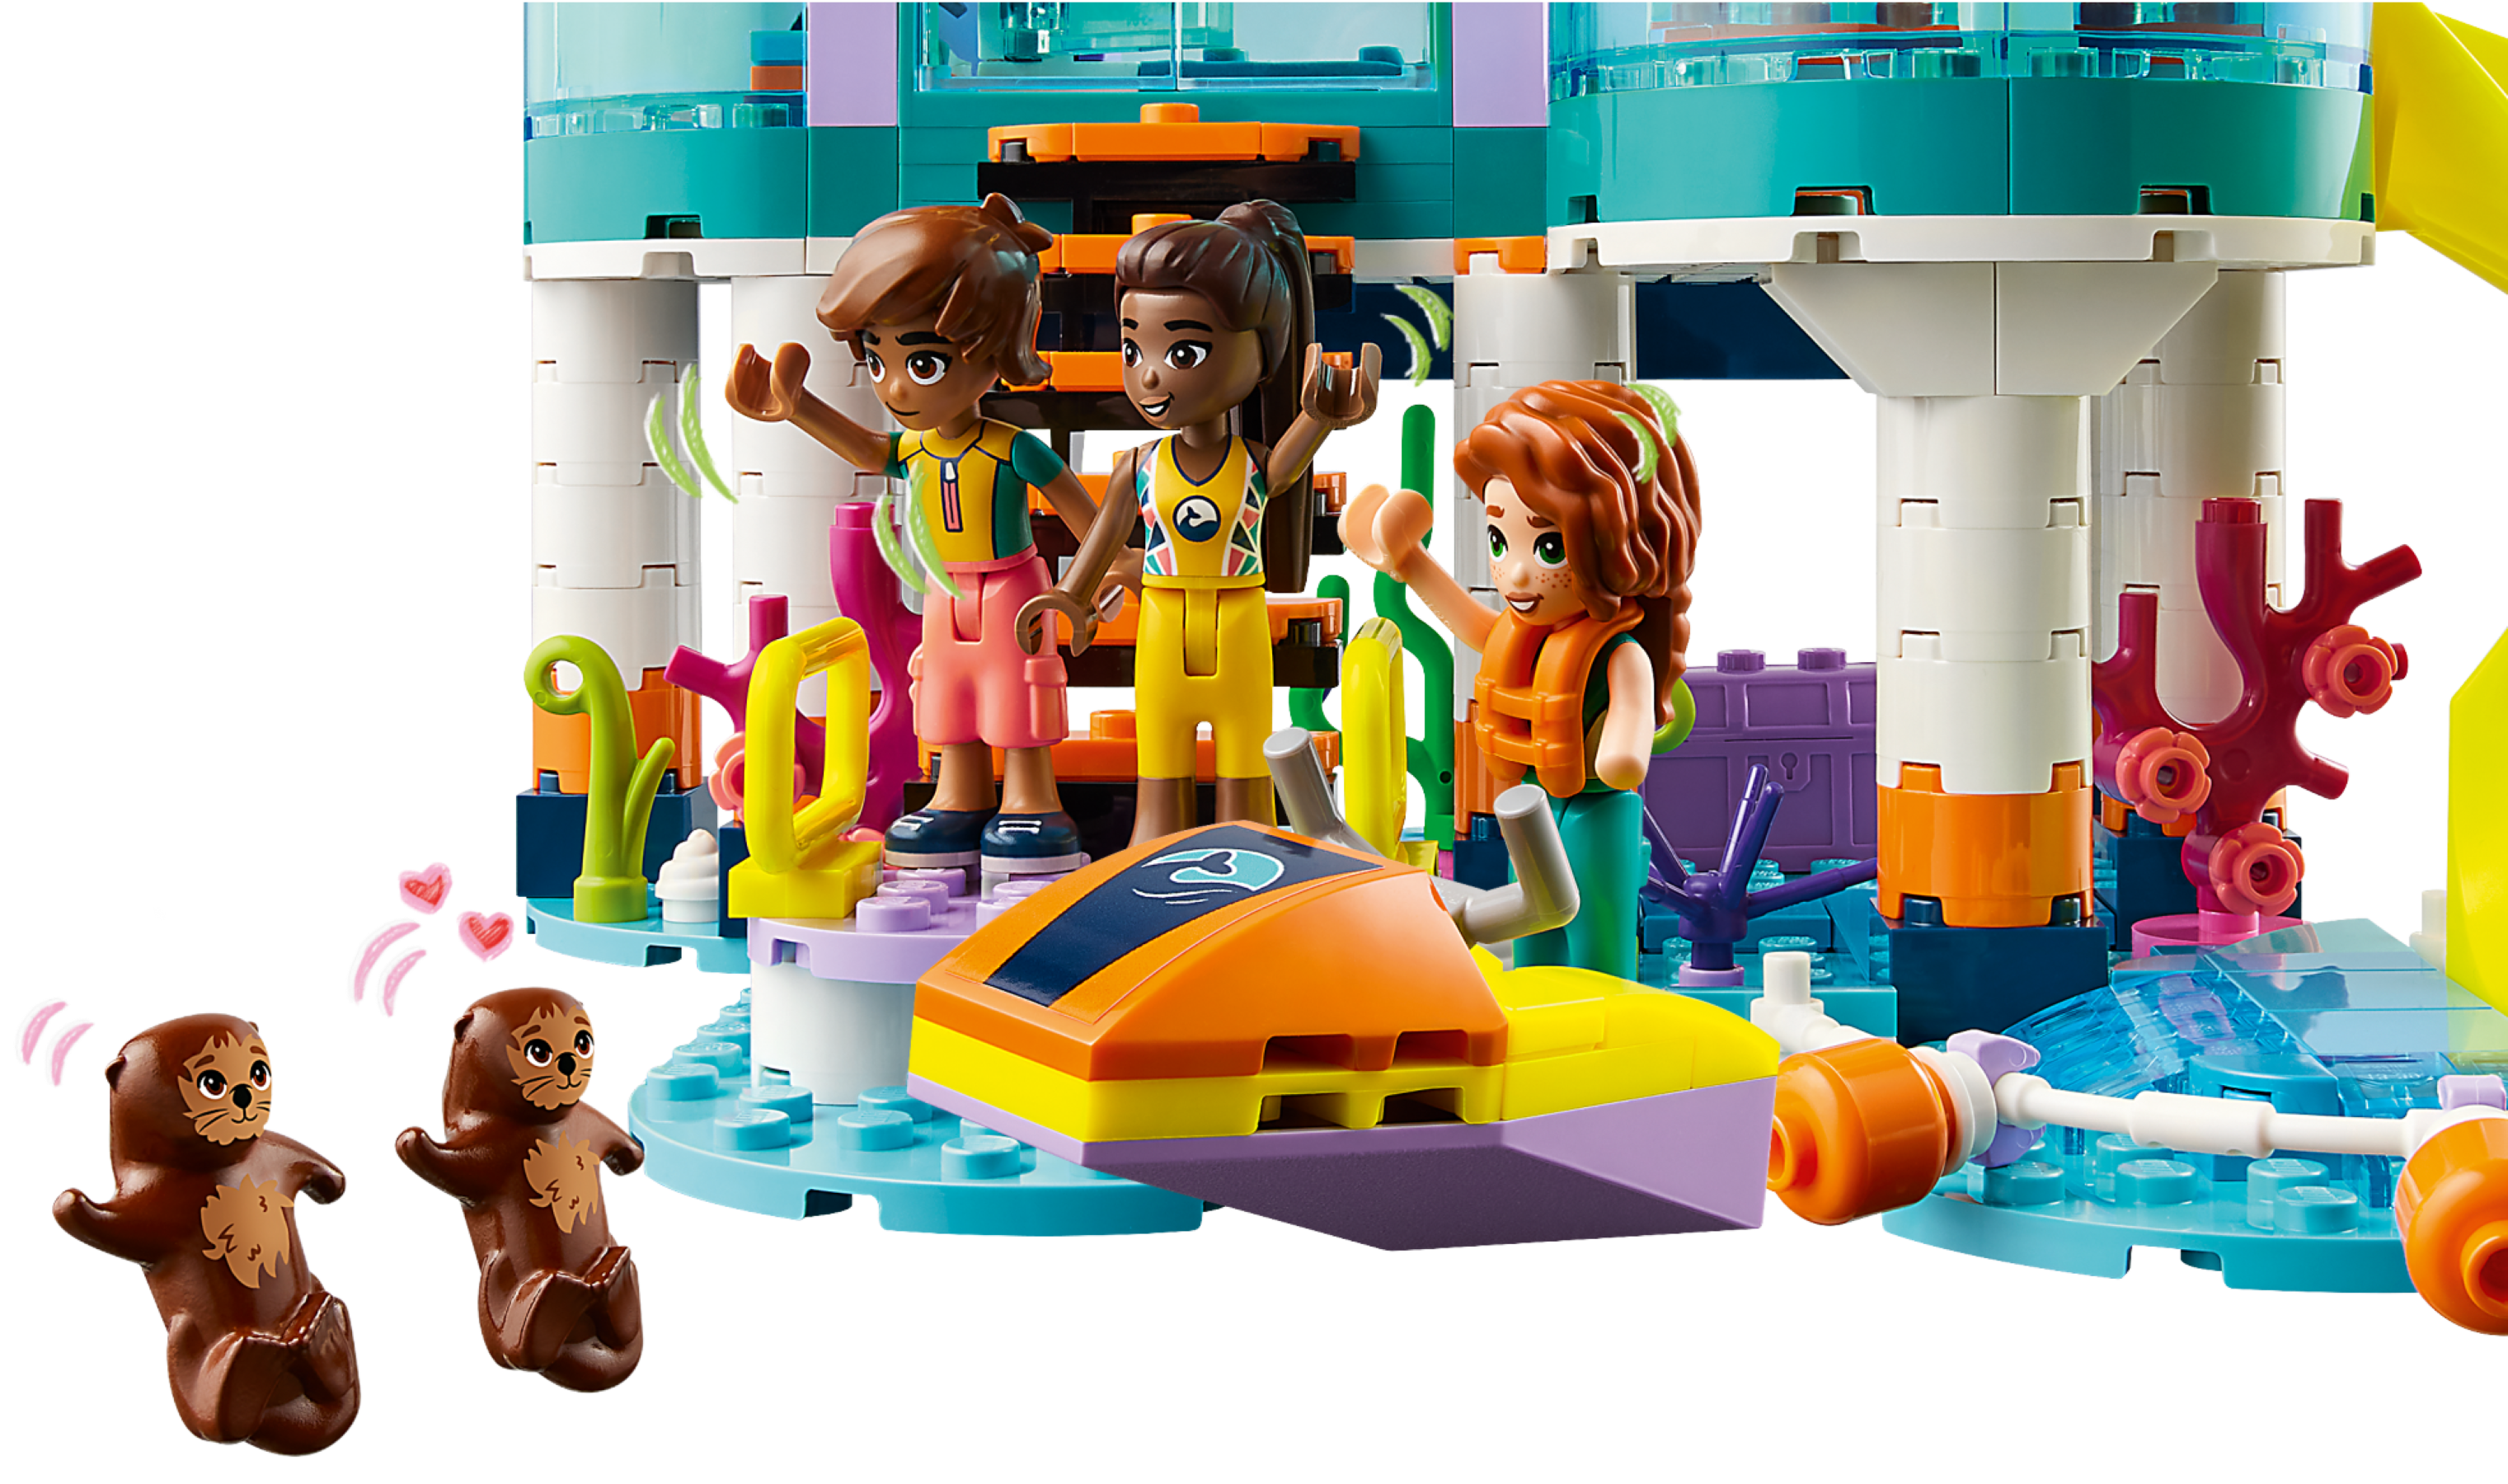 LEGO Friends - Sea Rescue Center 41736 - 376 Parts